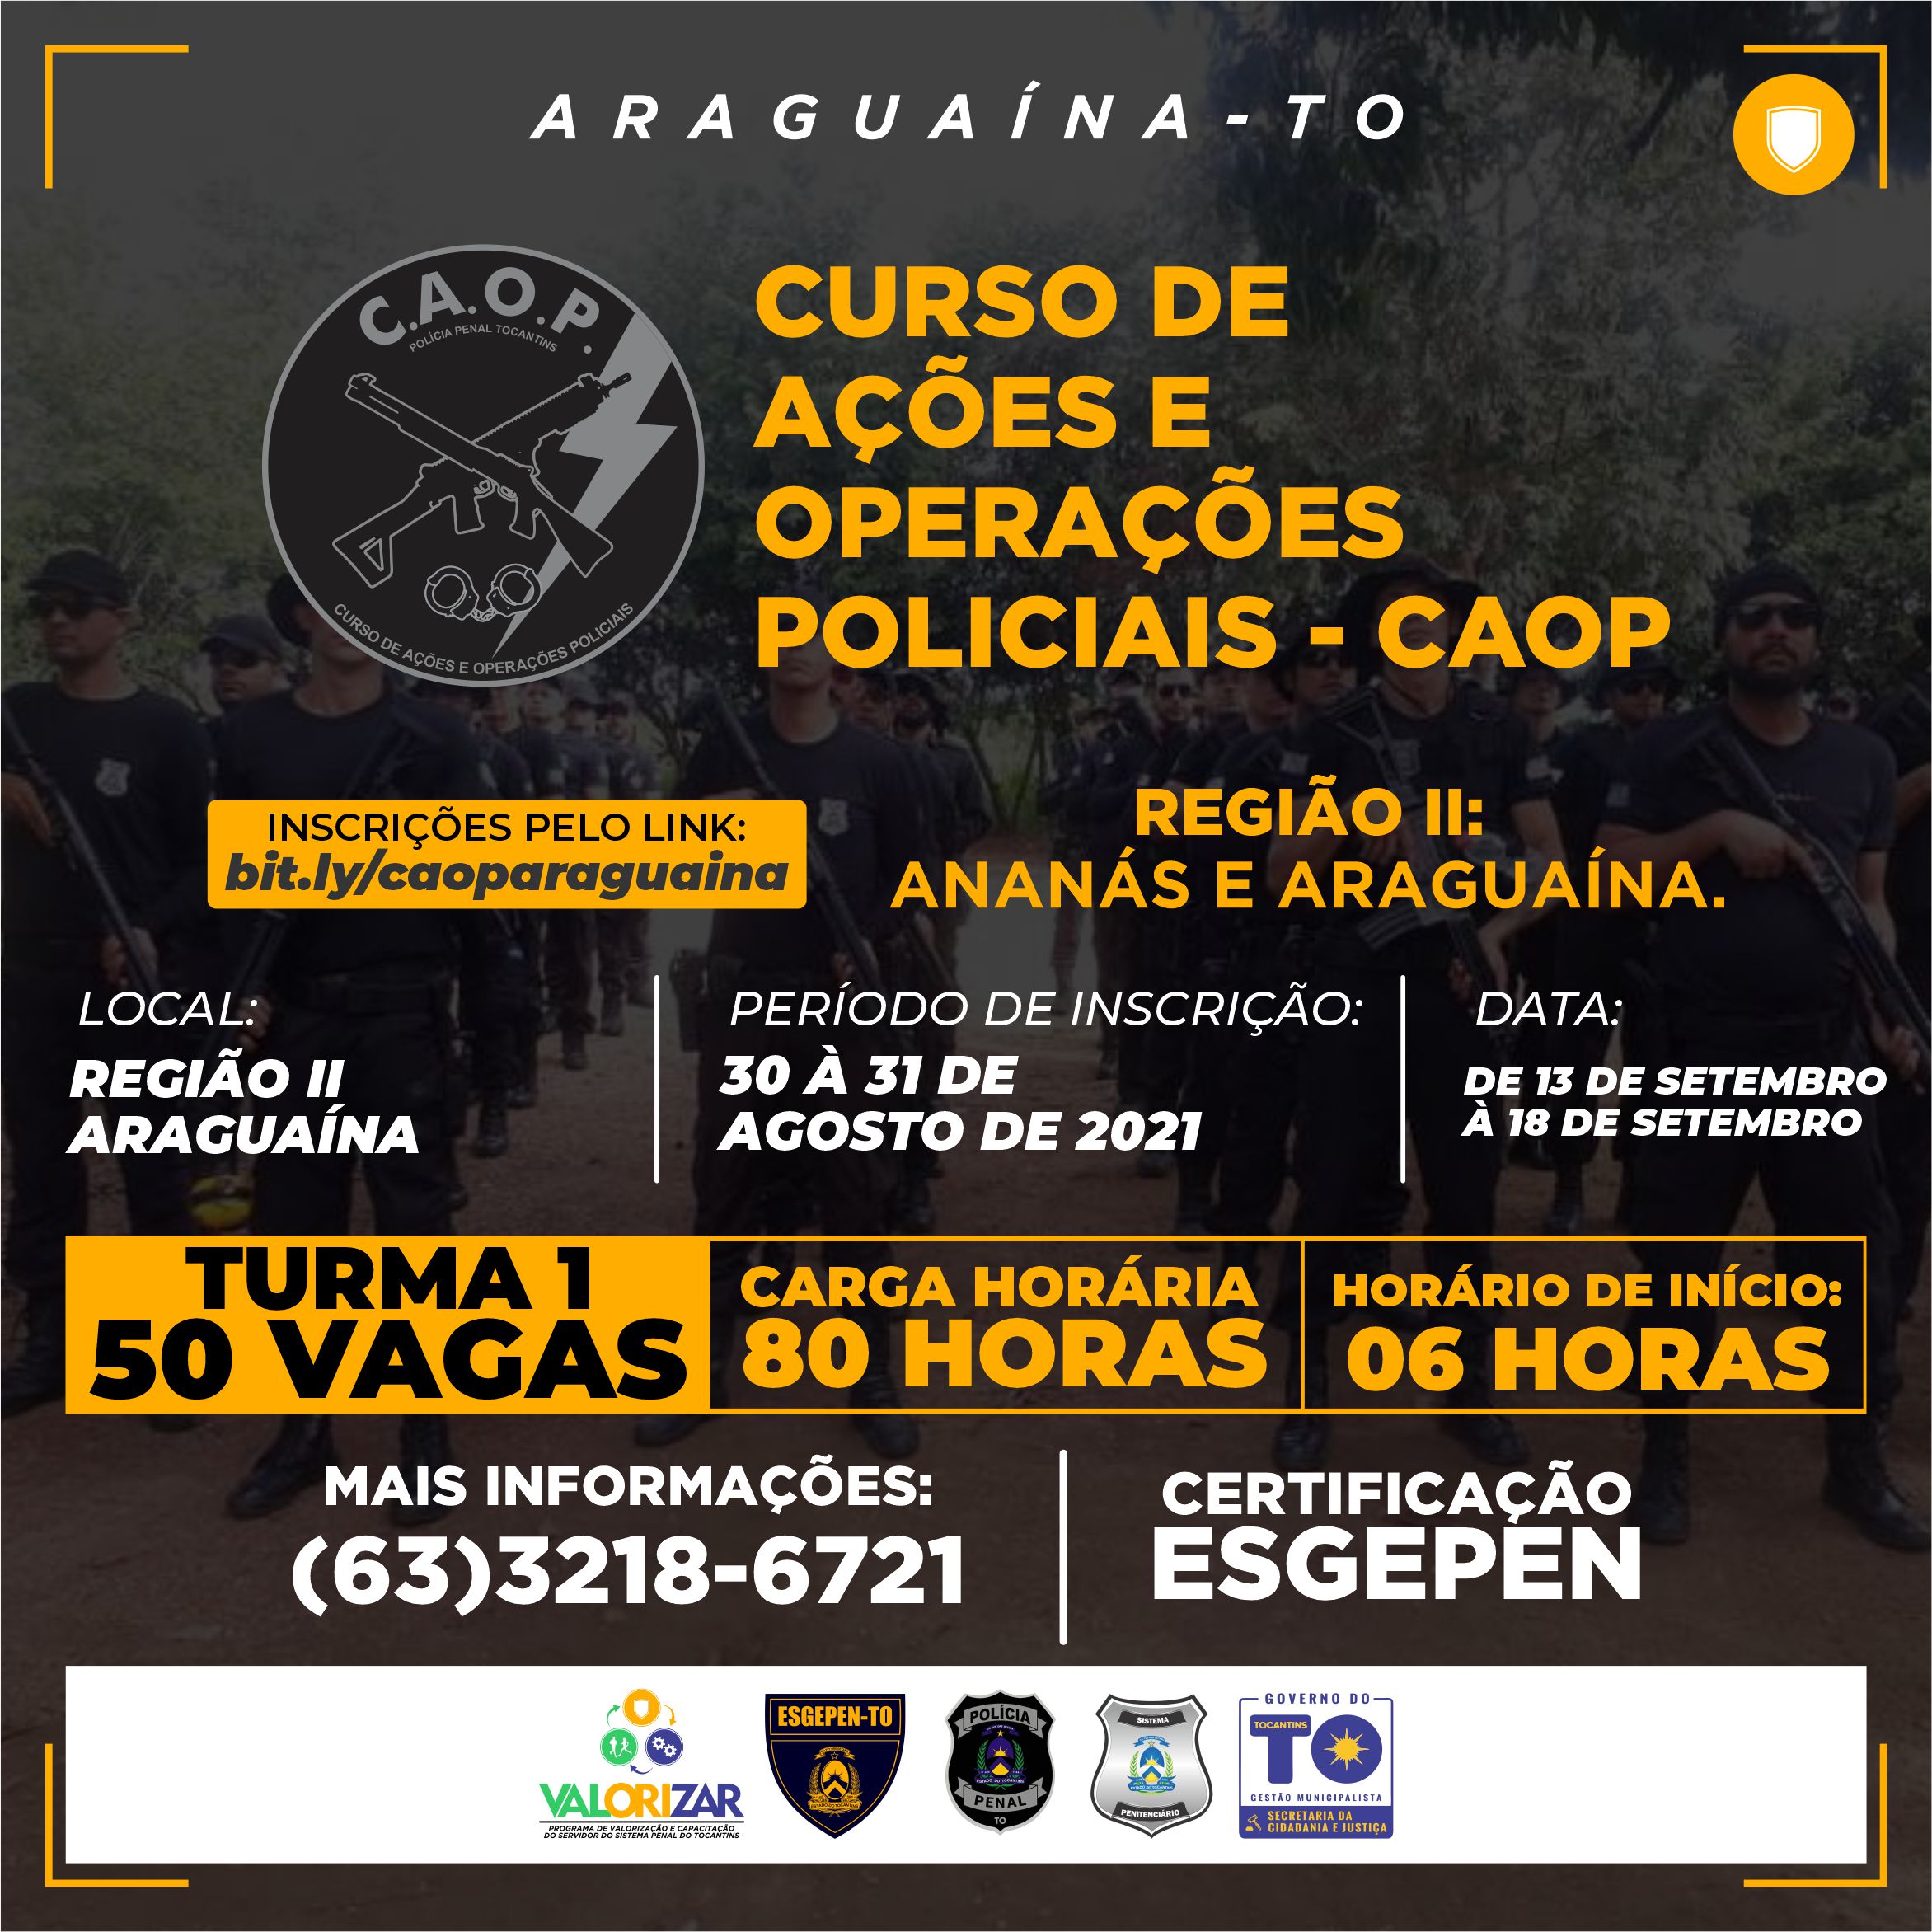 [ARAGUAÍNA TURMA 1] CURSO DE AÇÕES E OPERAÇÕES POLICIAIS - CAOP